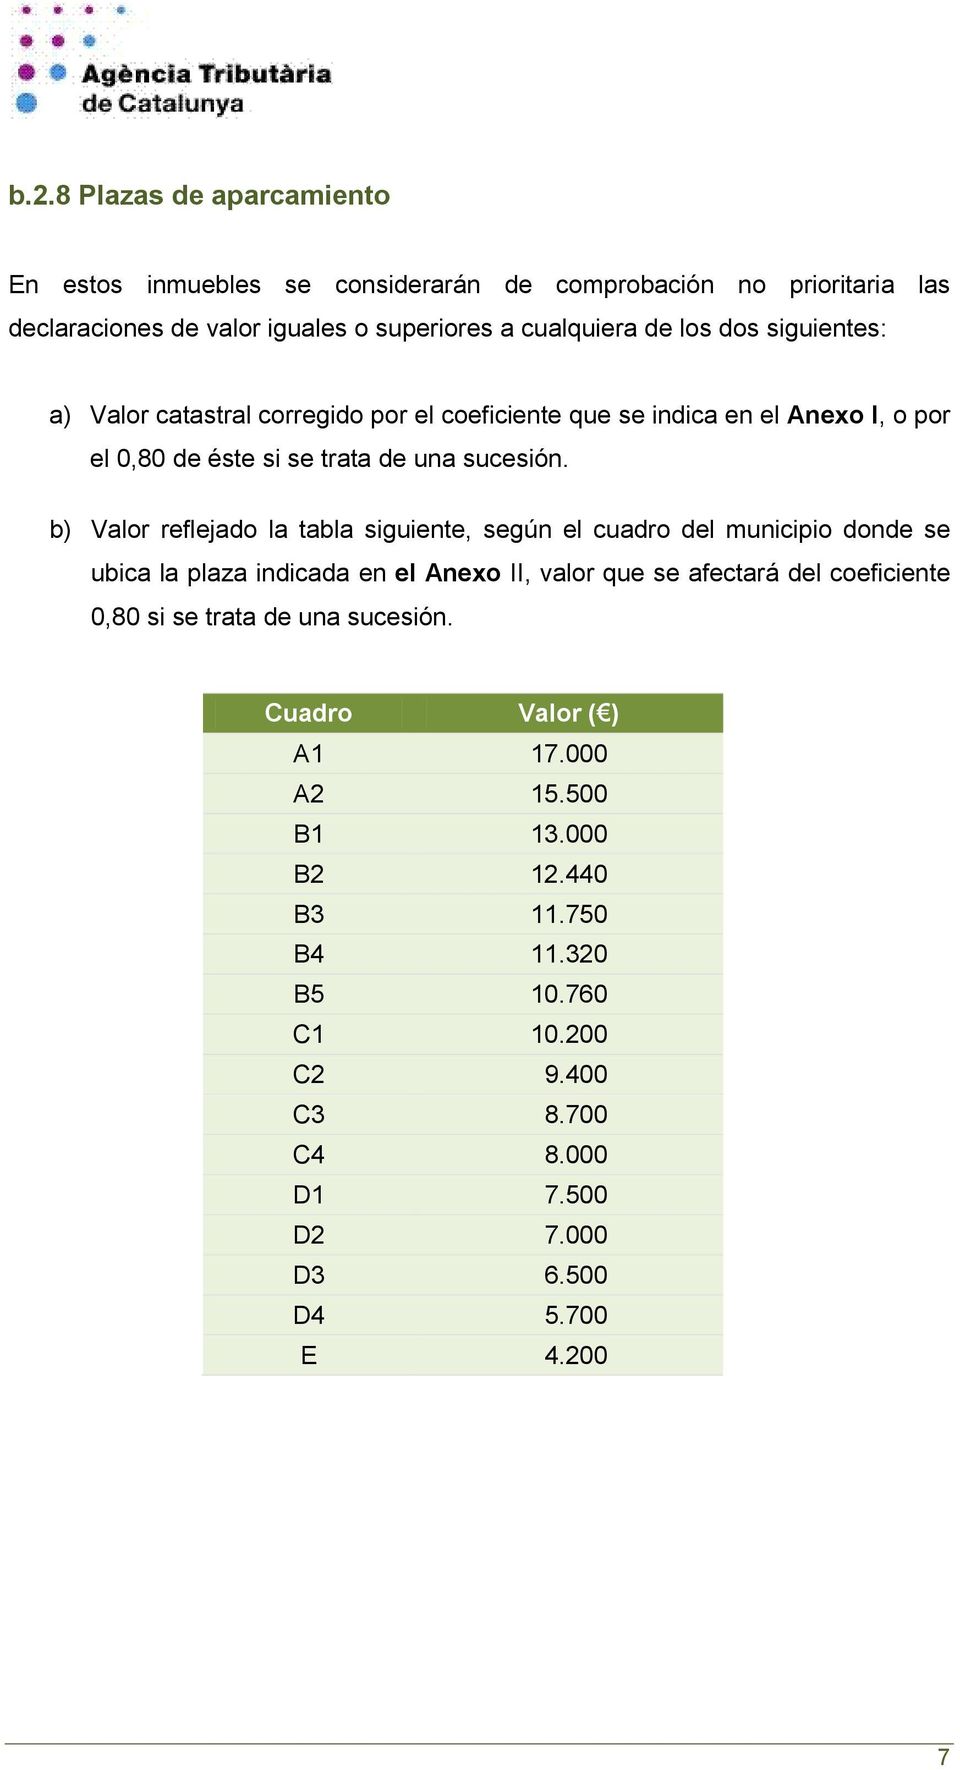 b) Valor reflejado la tabla siguiente, según el cuadro del municipio donde se ubica la plaza indicada en el Anexo II, valor que se afectará del coeficiente 0,80 si se